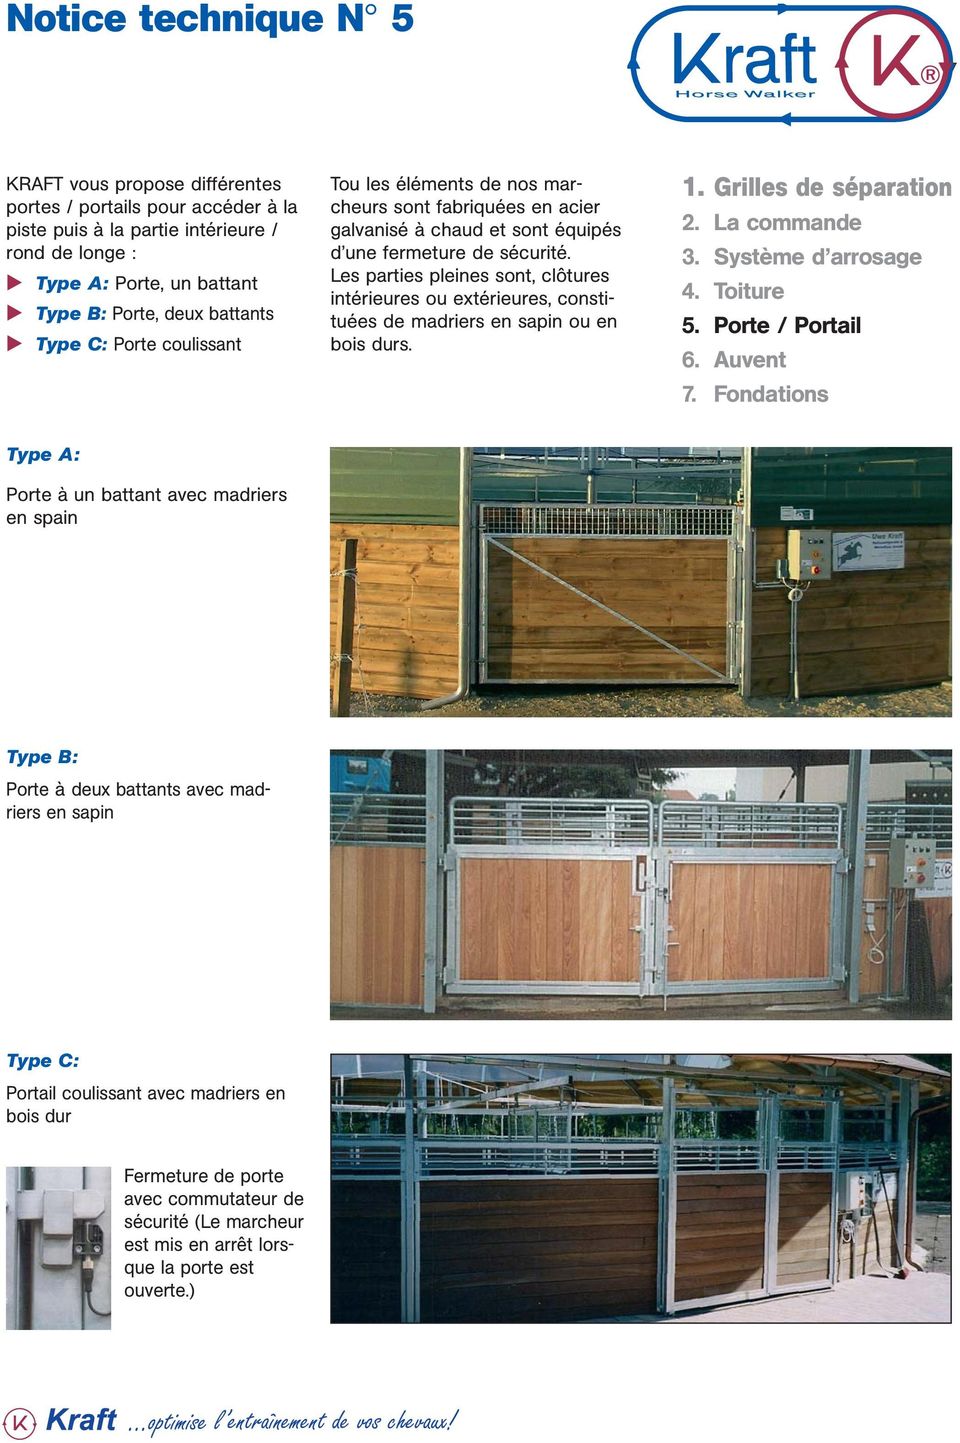 Les parties pleines sont, clôtures intérieures ou extérieures, constituées de madriers en sapin ou en bois durs.